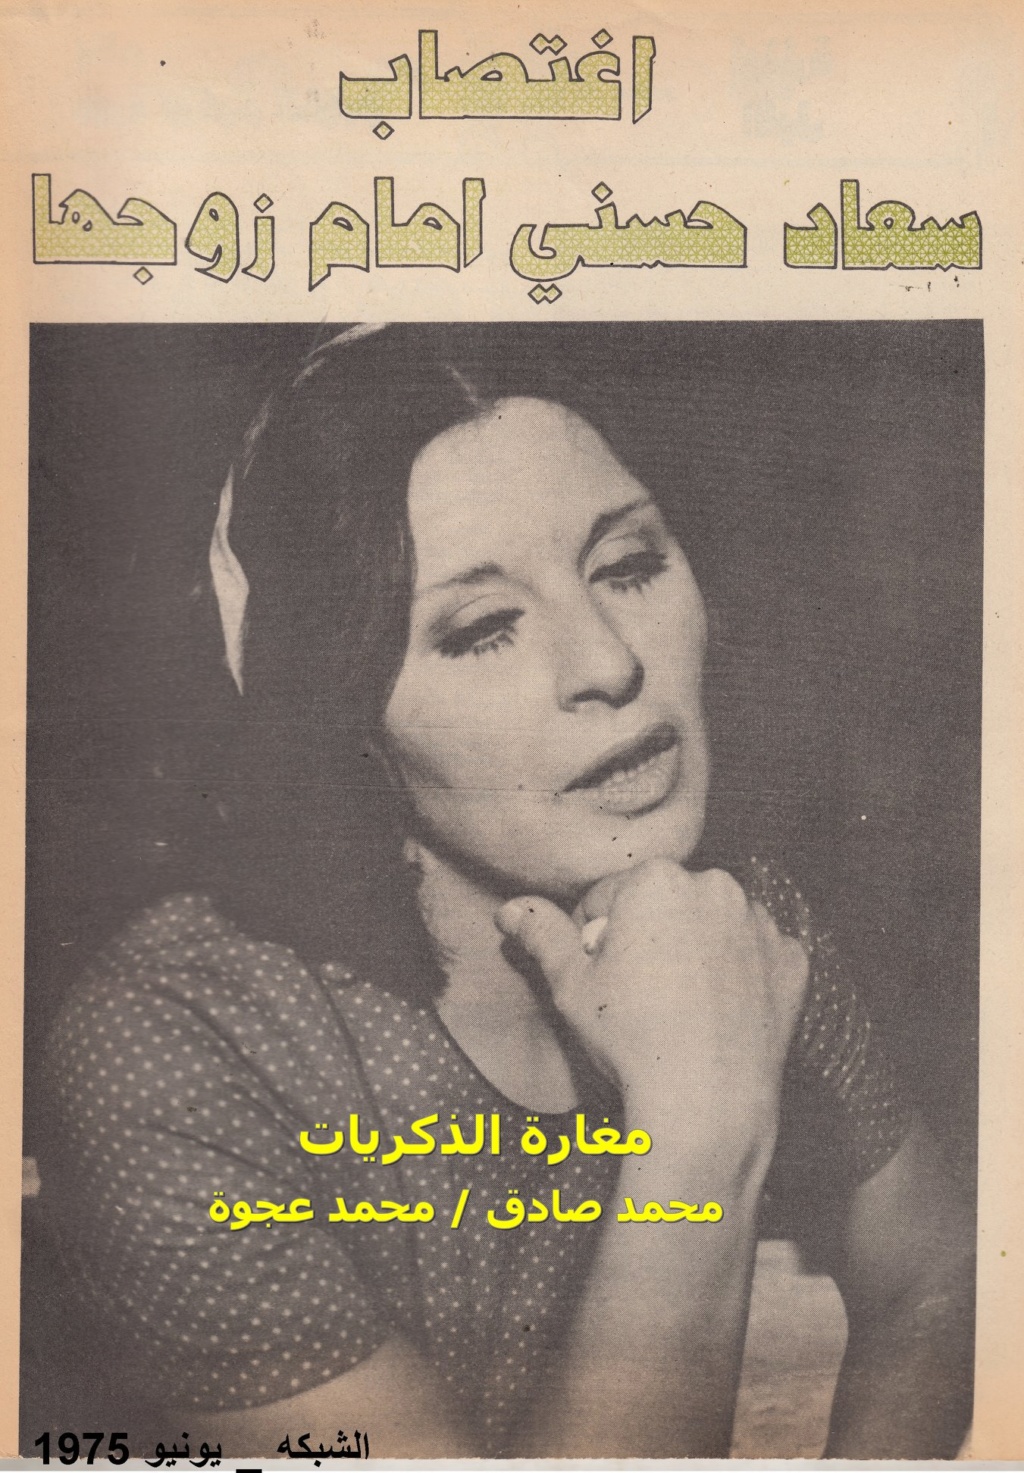 1975 - حوار صحفي : اغتصاب سعاد حسني امام زوجها 1975 م 1407